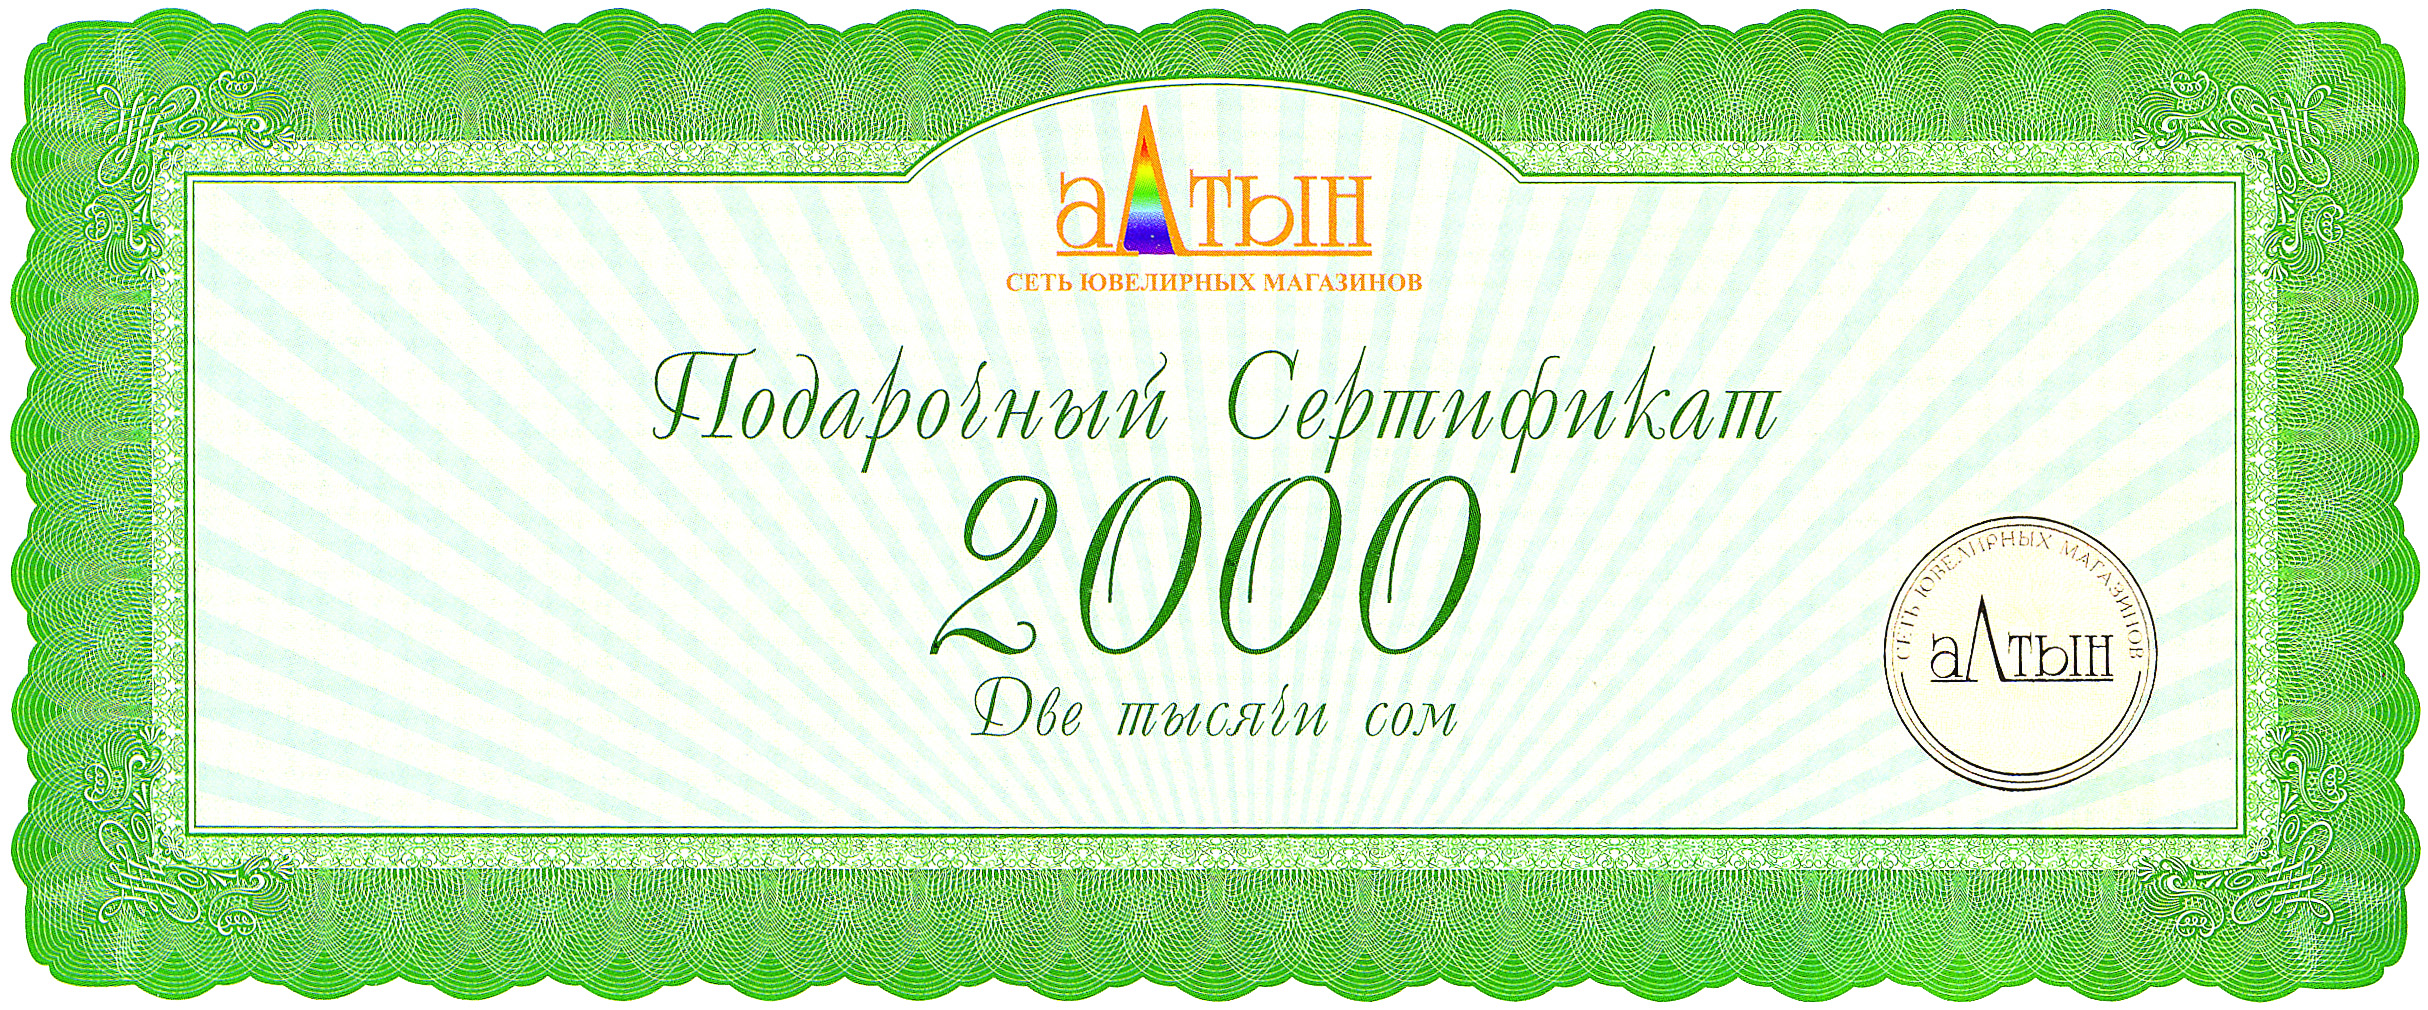 Подарочный сертификат на 2000 KGS